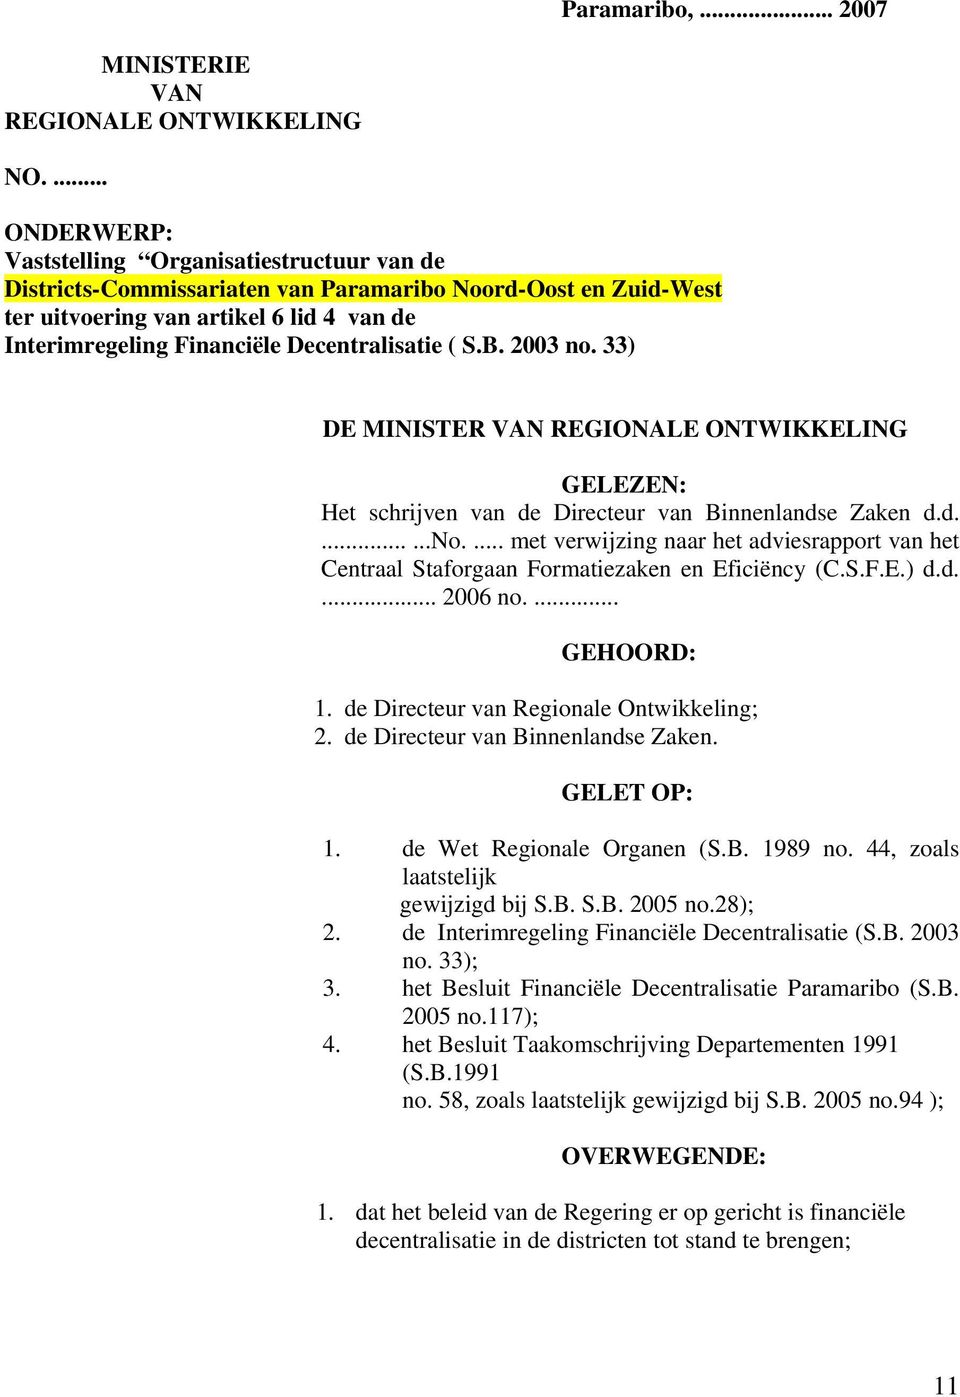 Decentralisatie ( S.B. 2003 no. 33) DE MINISTER VAN REGIONALE ONTWIKKELING GELEZEN: Het schrijven van de Directeur van Binnenlandse Zaken d.d.......no.... met verwijzing naar het adviesrapport van het Centraal Staforgaan Formatiezaken en Eficiëncy (C.